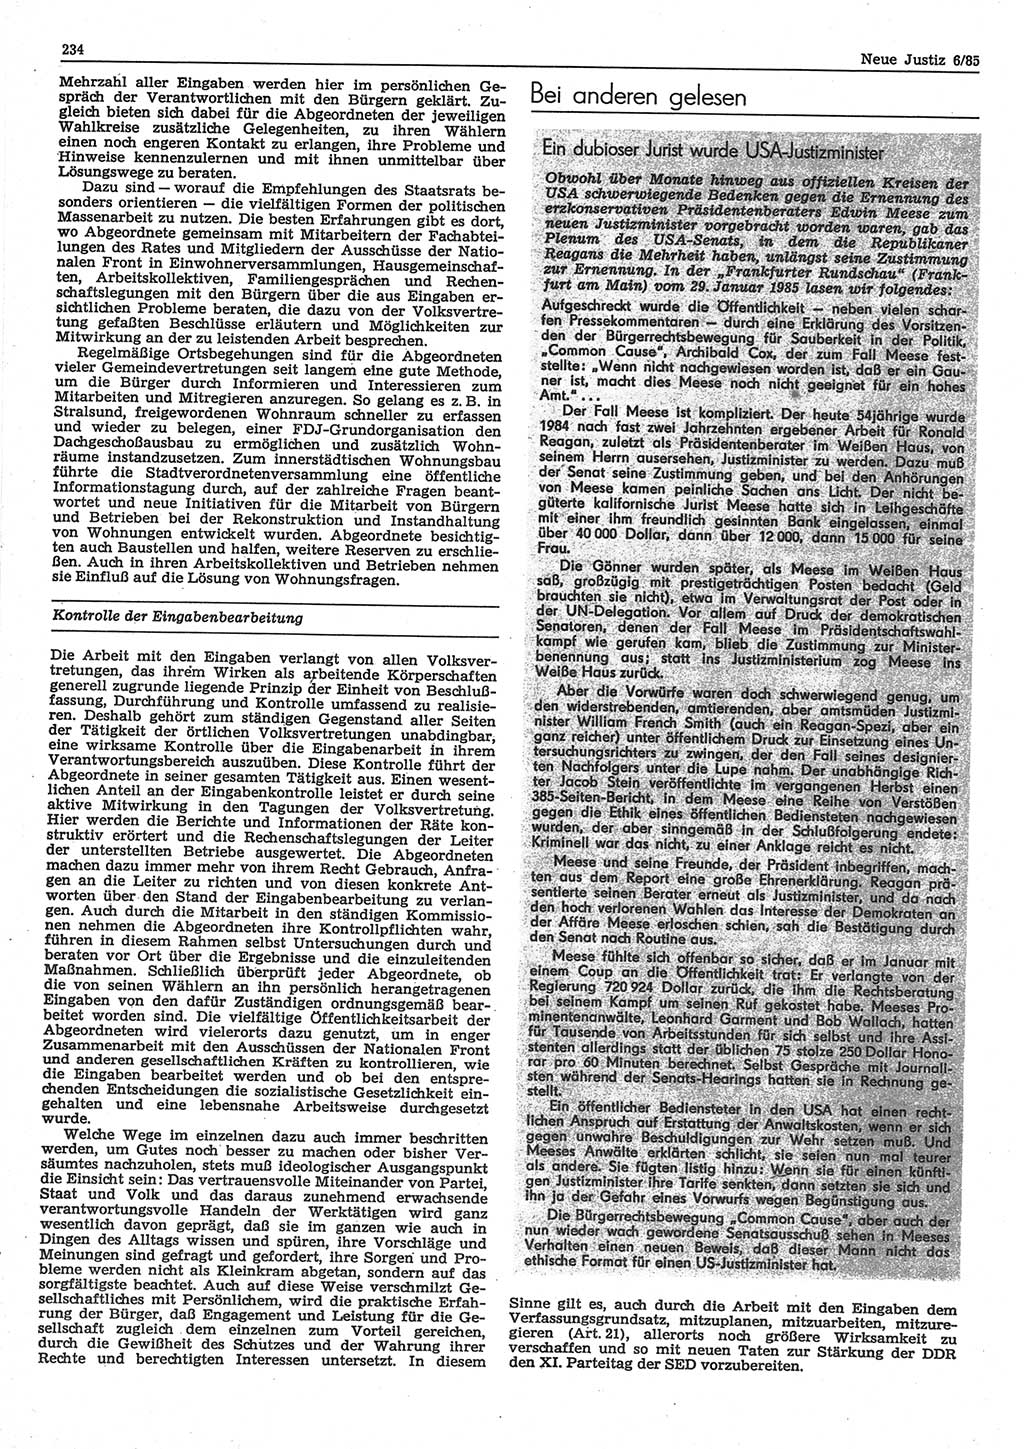 Neue Justiz (NJ), Zeitschrift für sozialistisches Recht und Gesetzlichkeit [Deutsche Demokratische Republik (DDR)], 39. Jahrgang 1985, Seite 234 (NJ DDR 1985, S. 234)